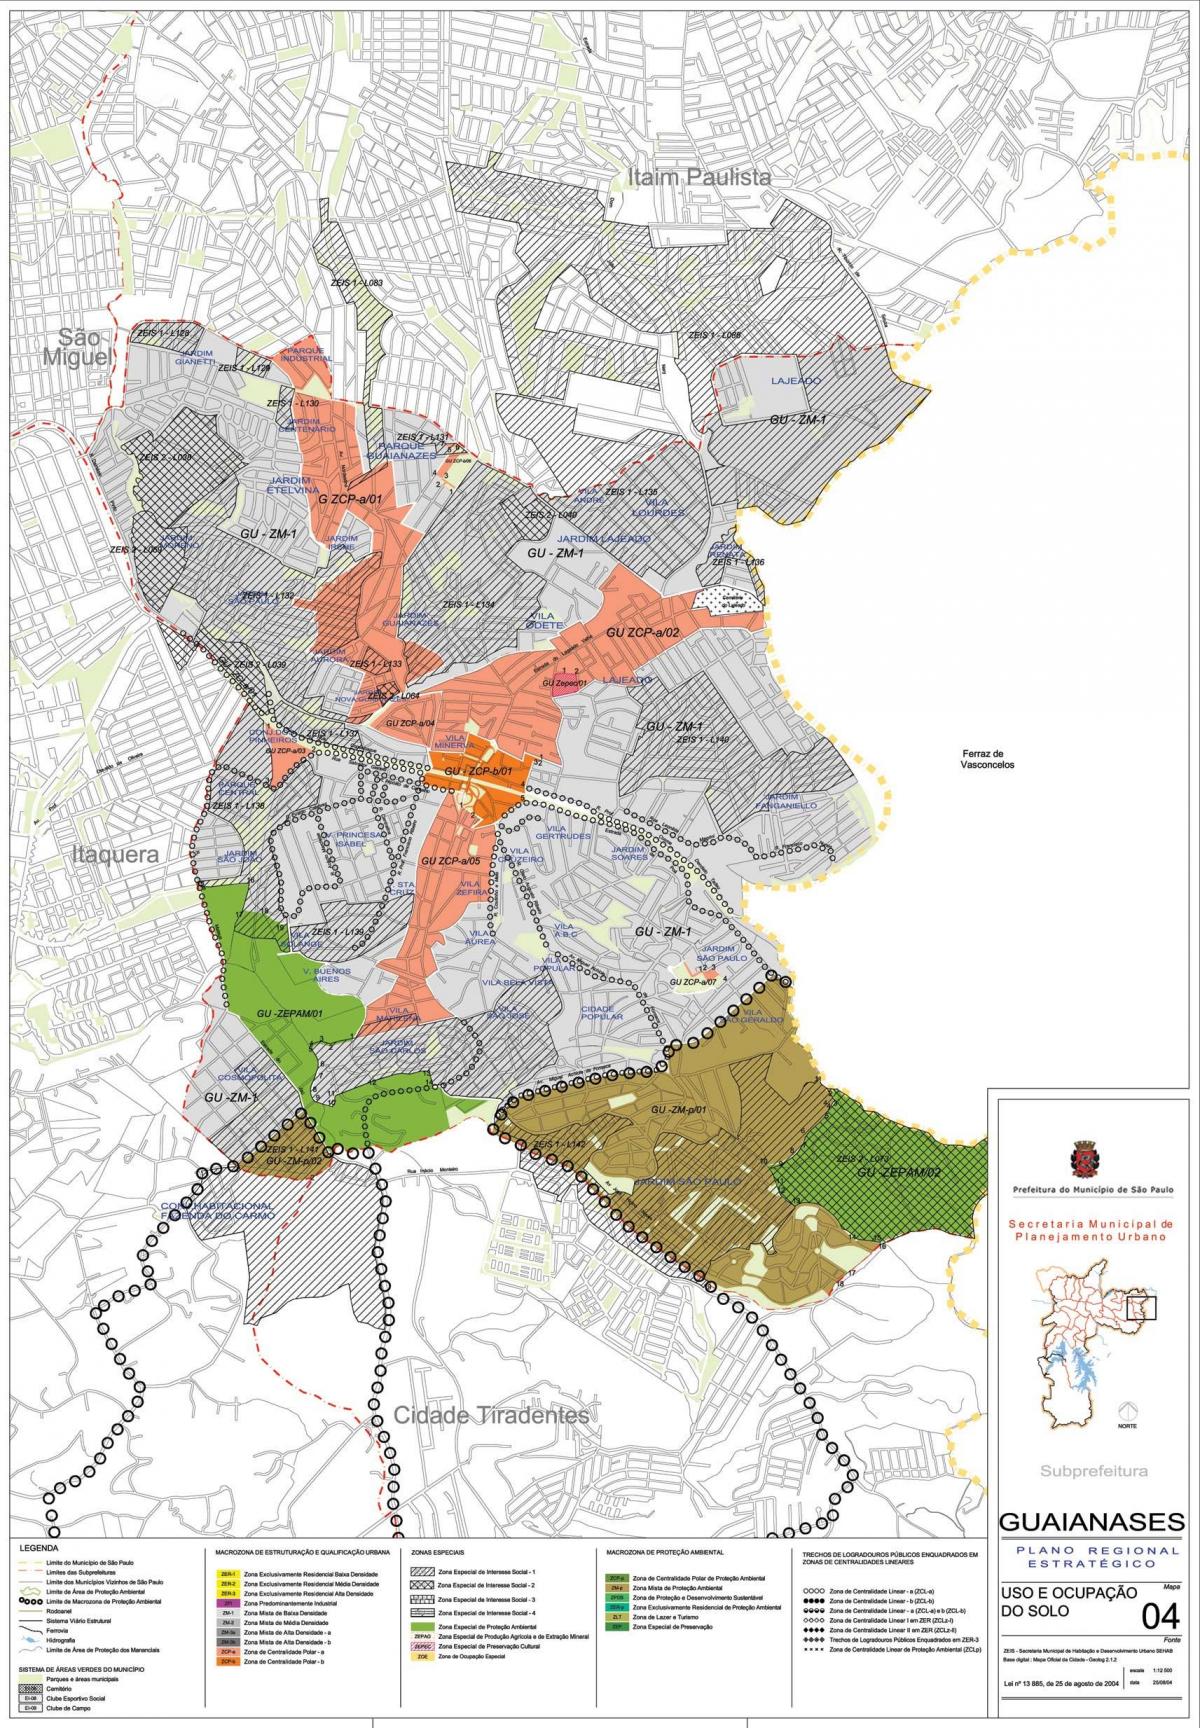 نقشه گواینسس São Paulo - اشغال خاک